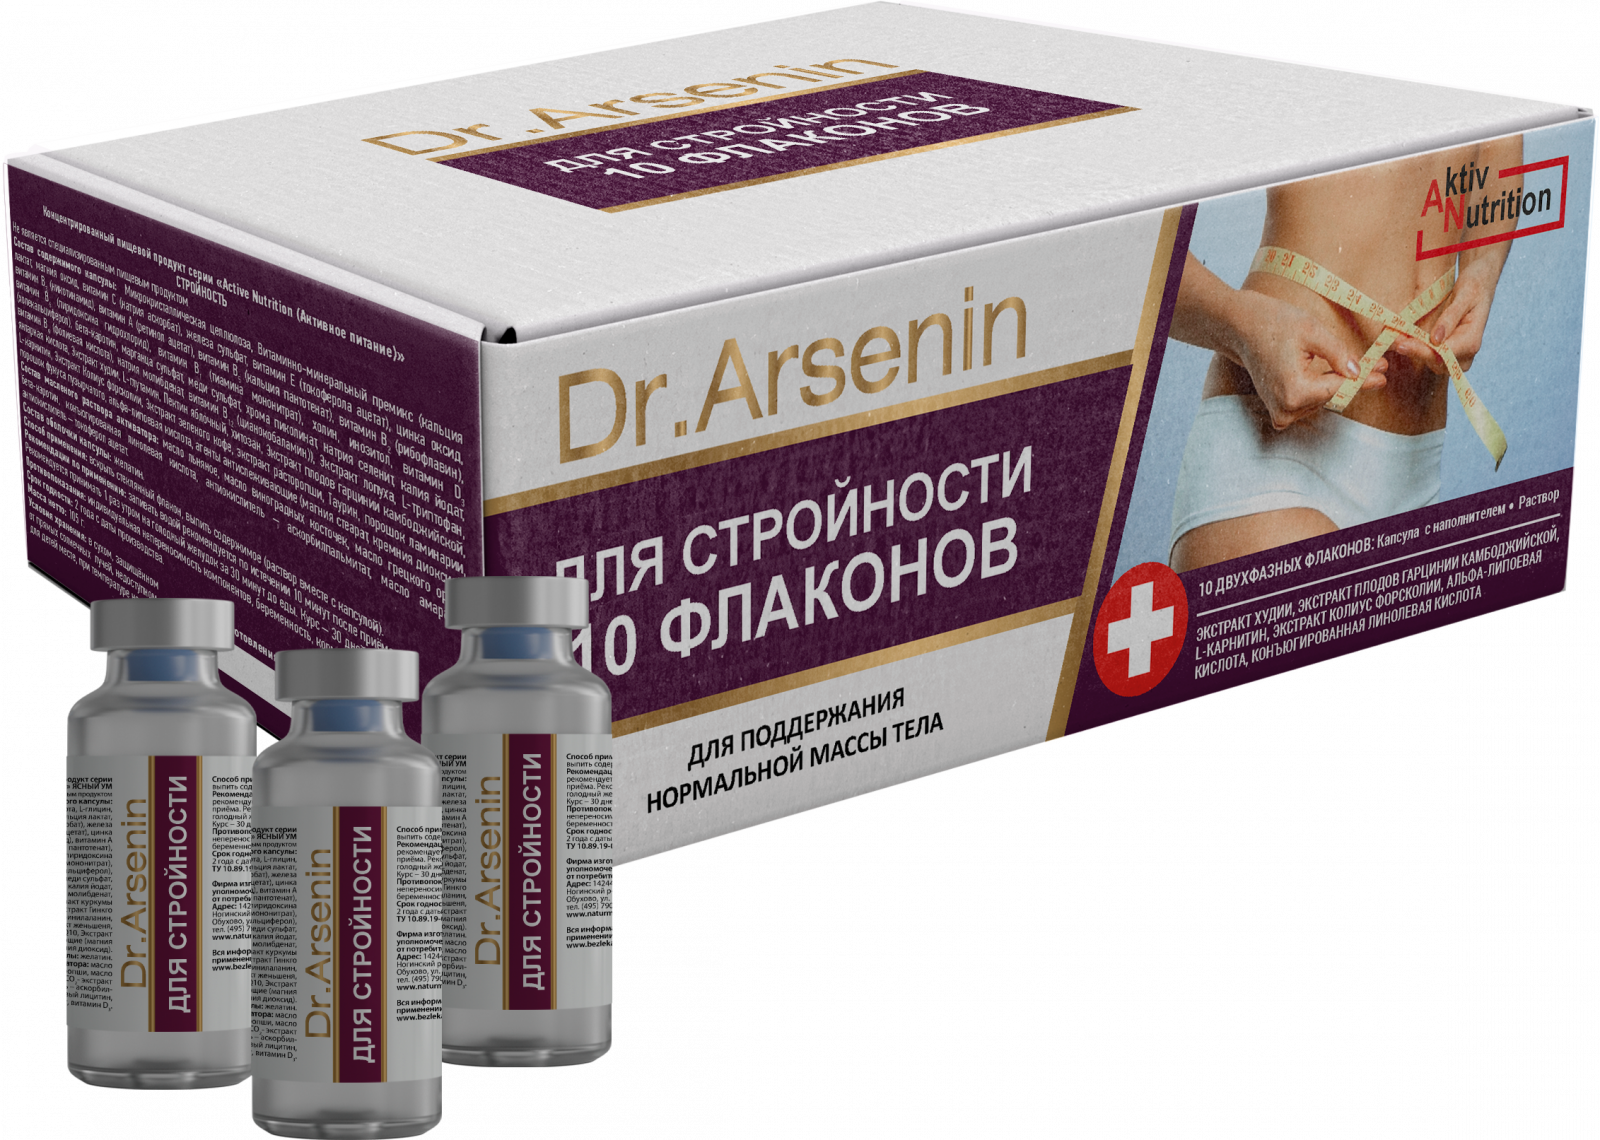  «"Active nutrition" СТРОЙНОСТЬ Dr. Arsenin 10 флаконов» - Капсулы в Активаторе